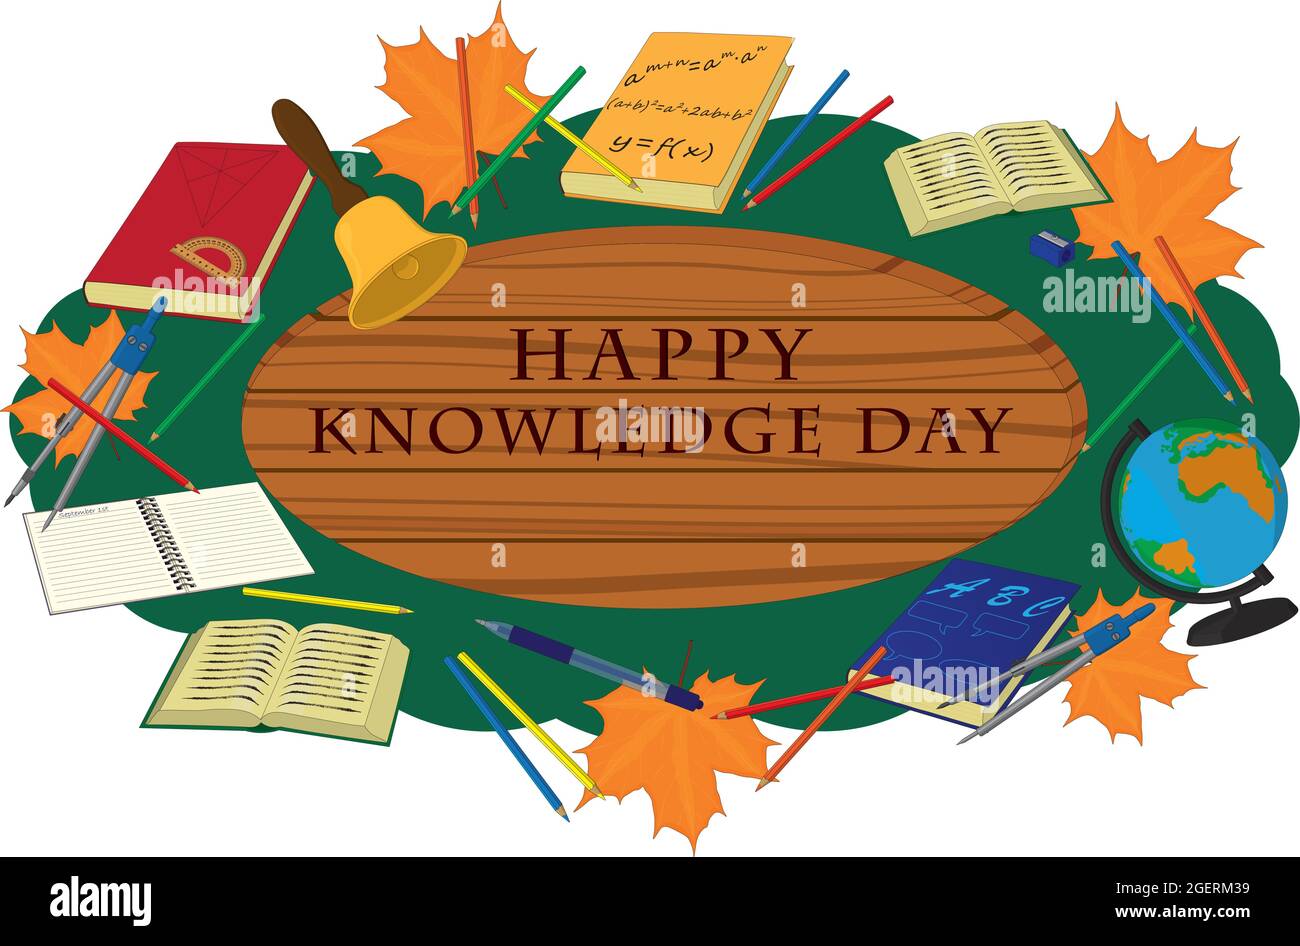 Happy Knowledge day panneau en bois décoré avec des fournitures scolaires illustration vectorielle Illustration de Vecteur